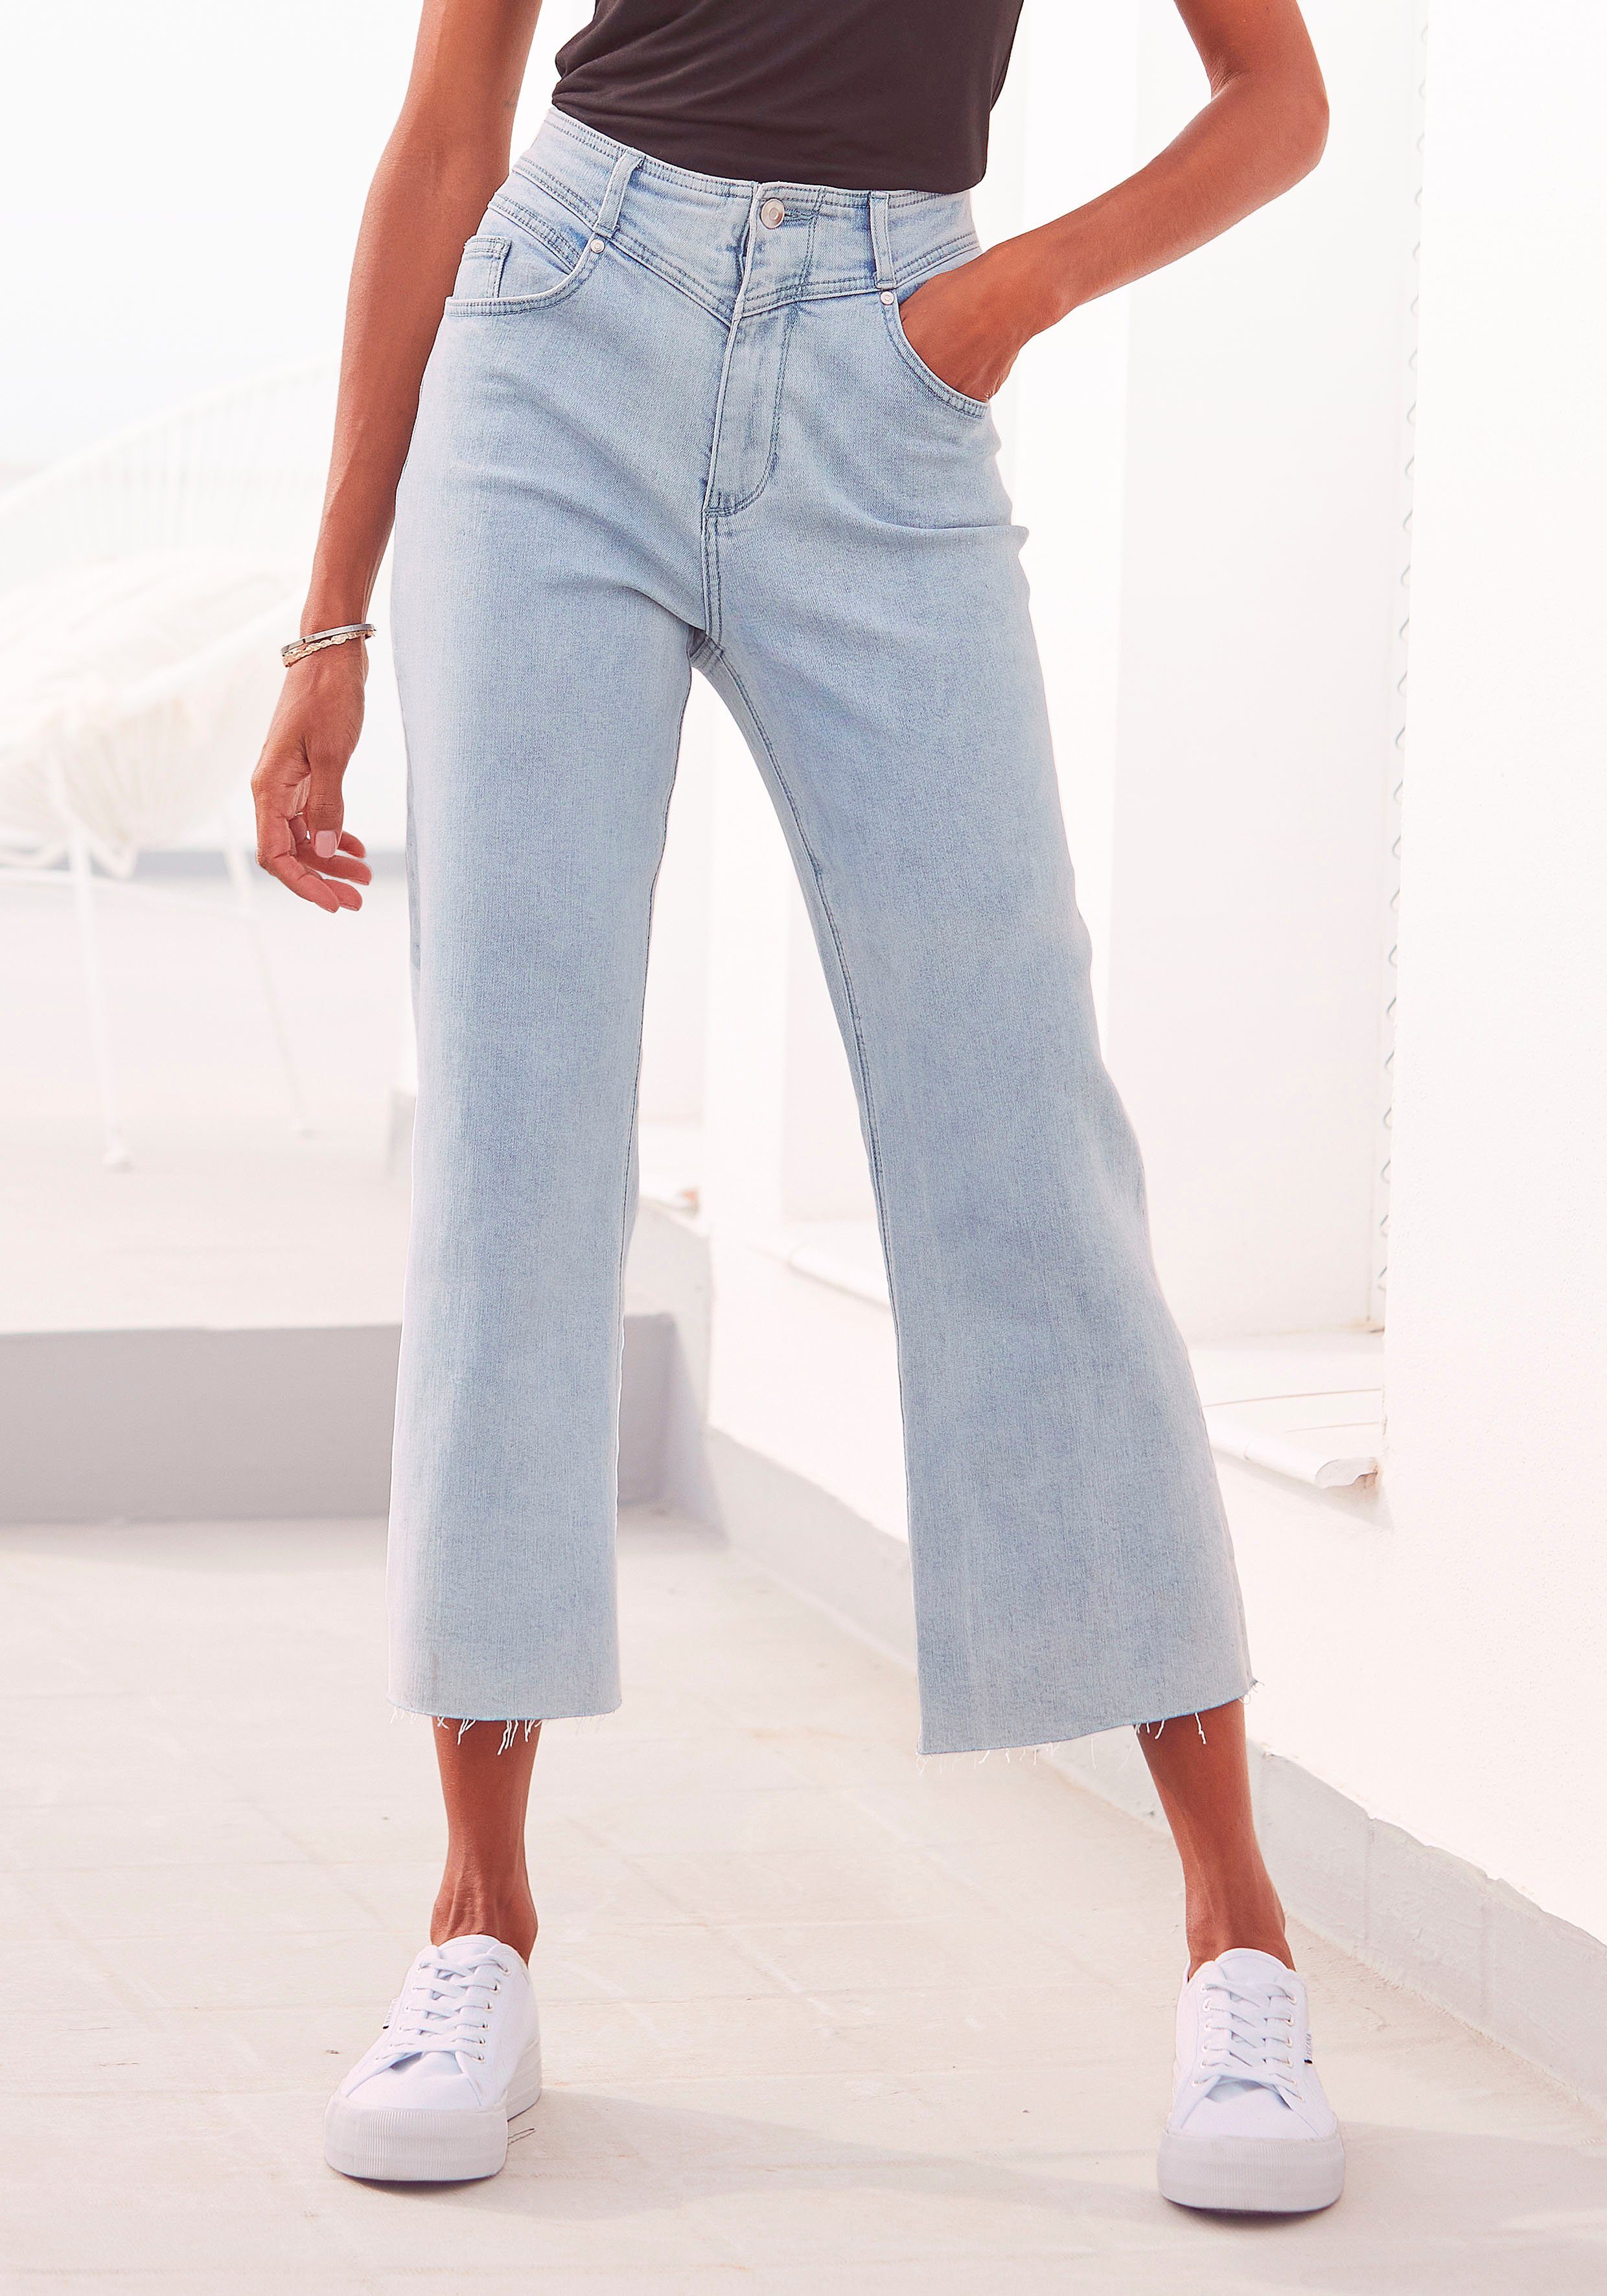 LASCANA 7/8-Jeans mit leicht ausgefransten Beinabschlüssen hellblau-washed | Weite Jeans